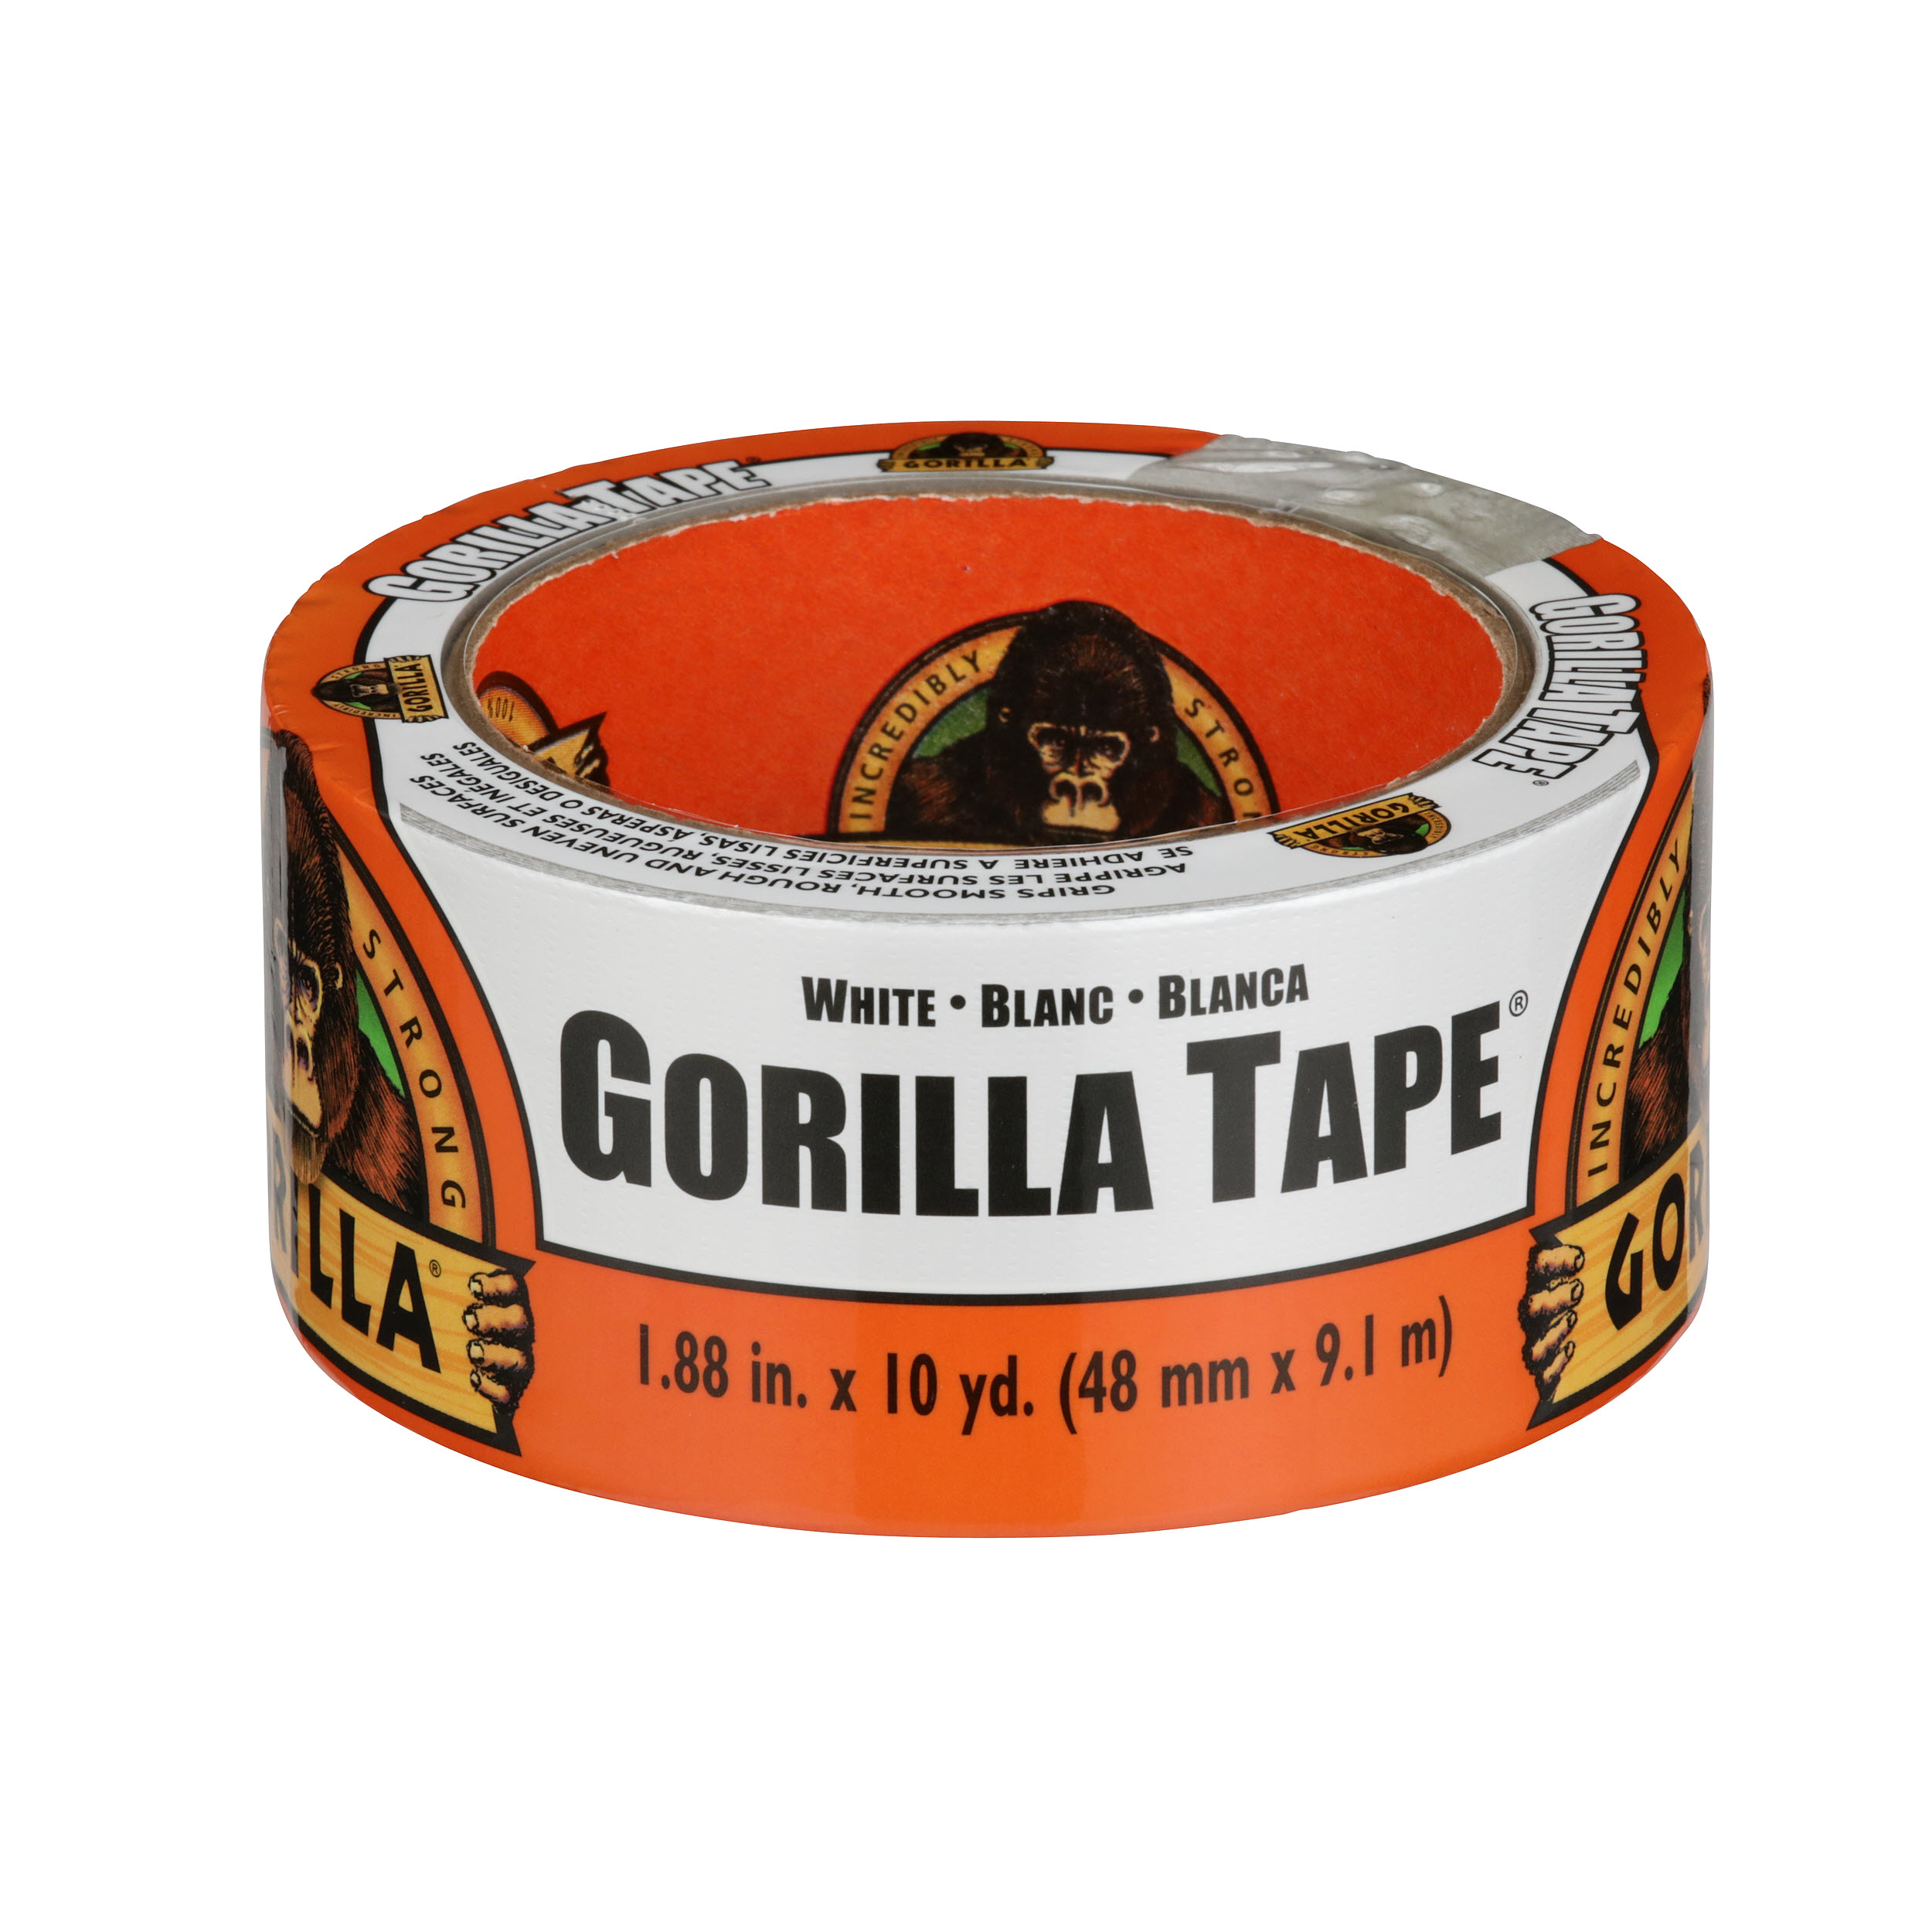 Gorilla Glue White Tape, 10 yd Roll